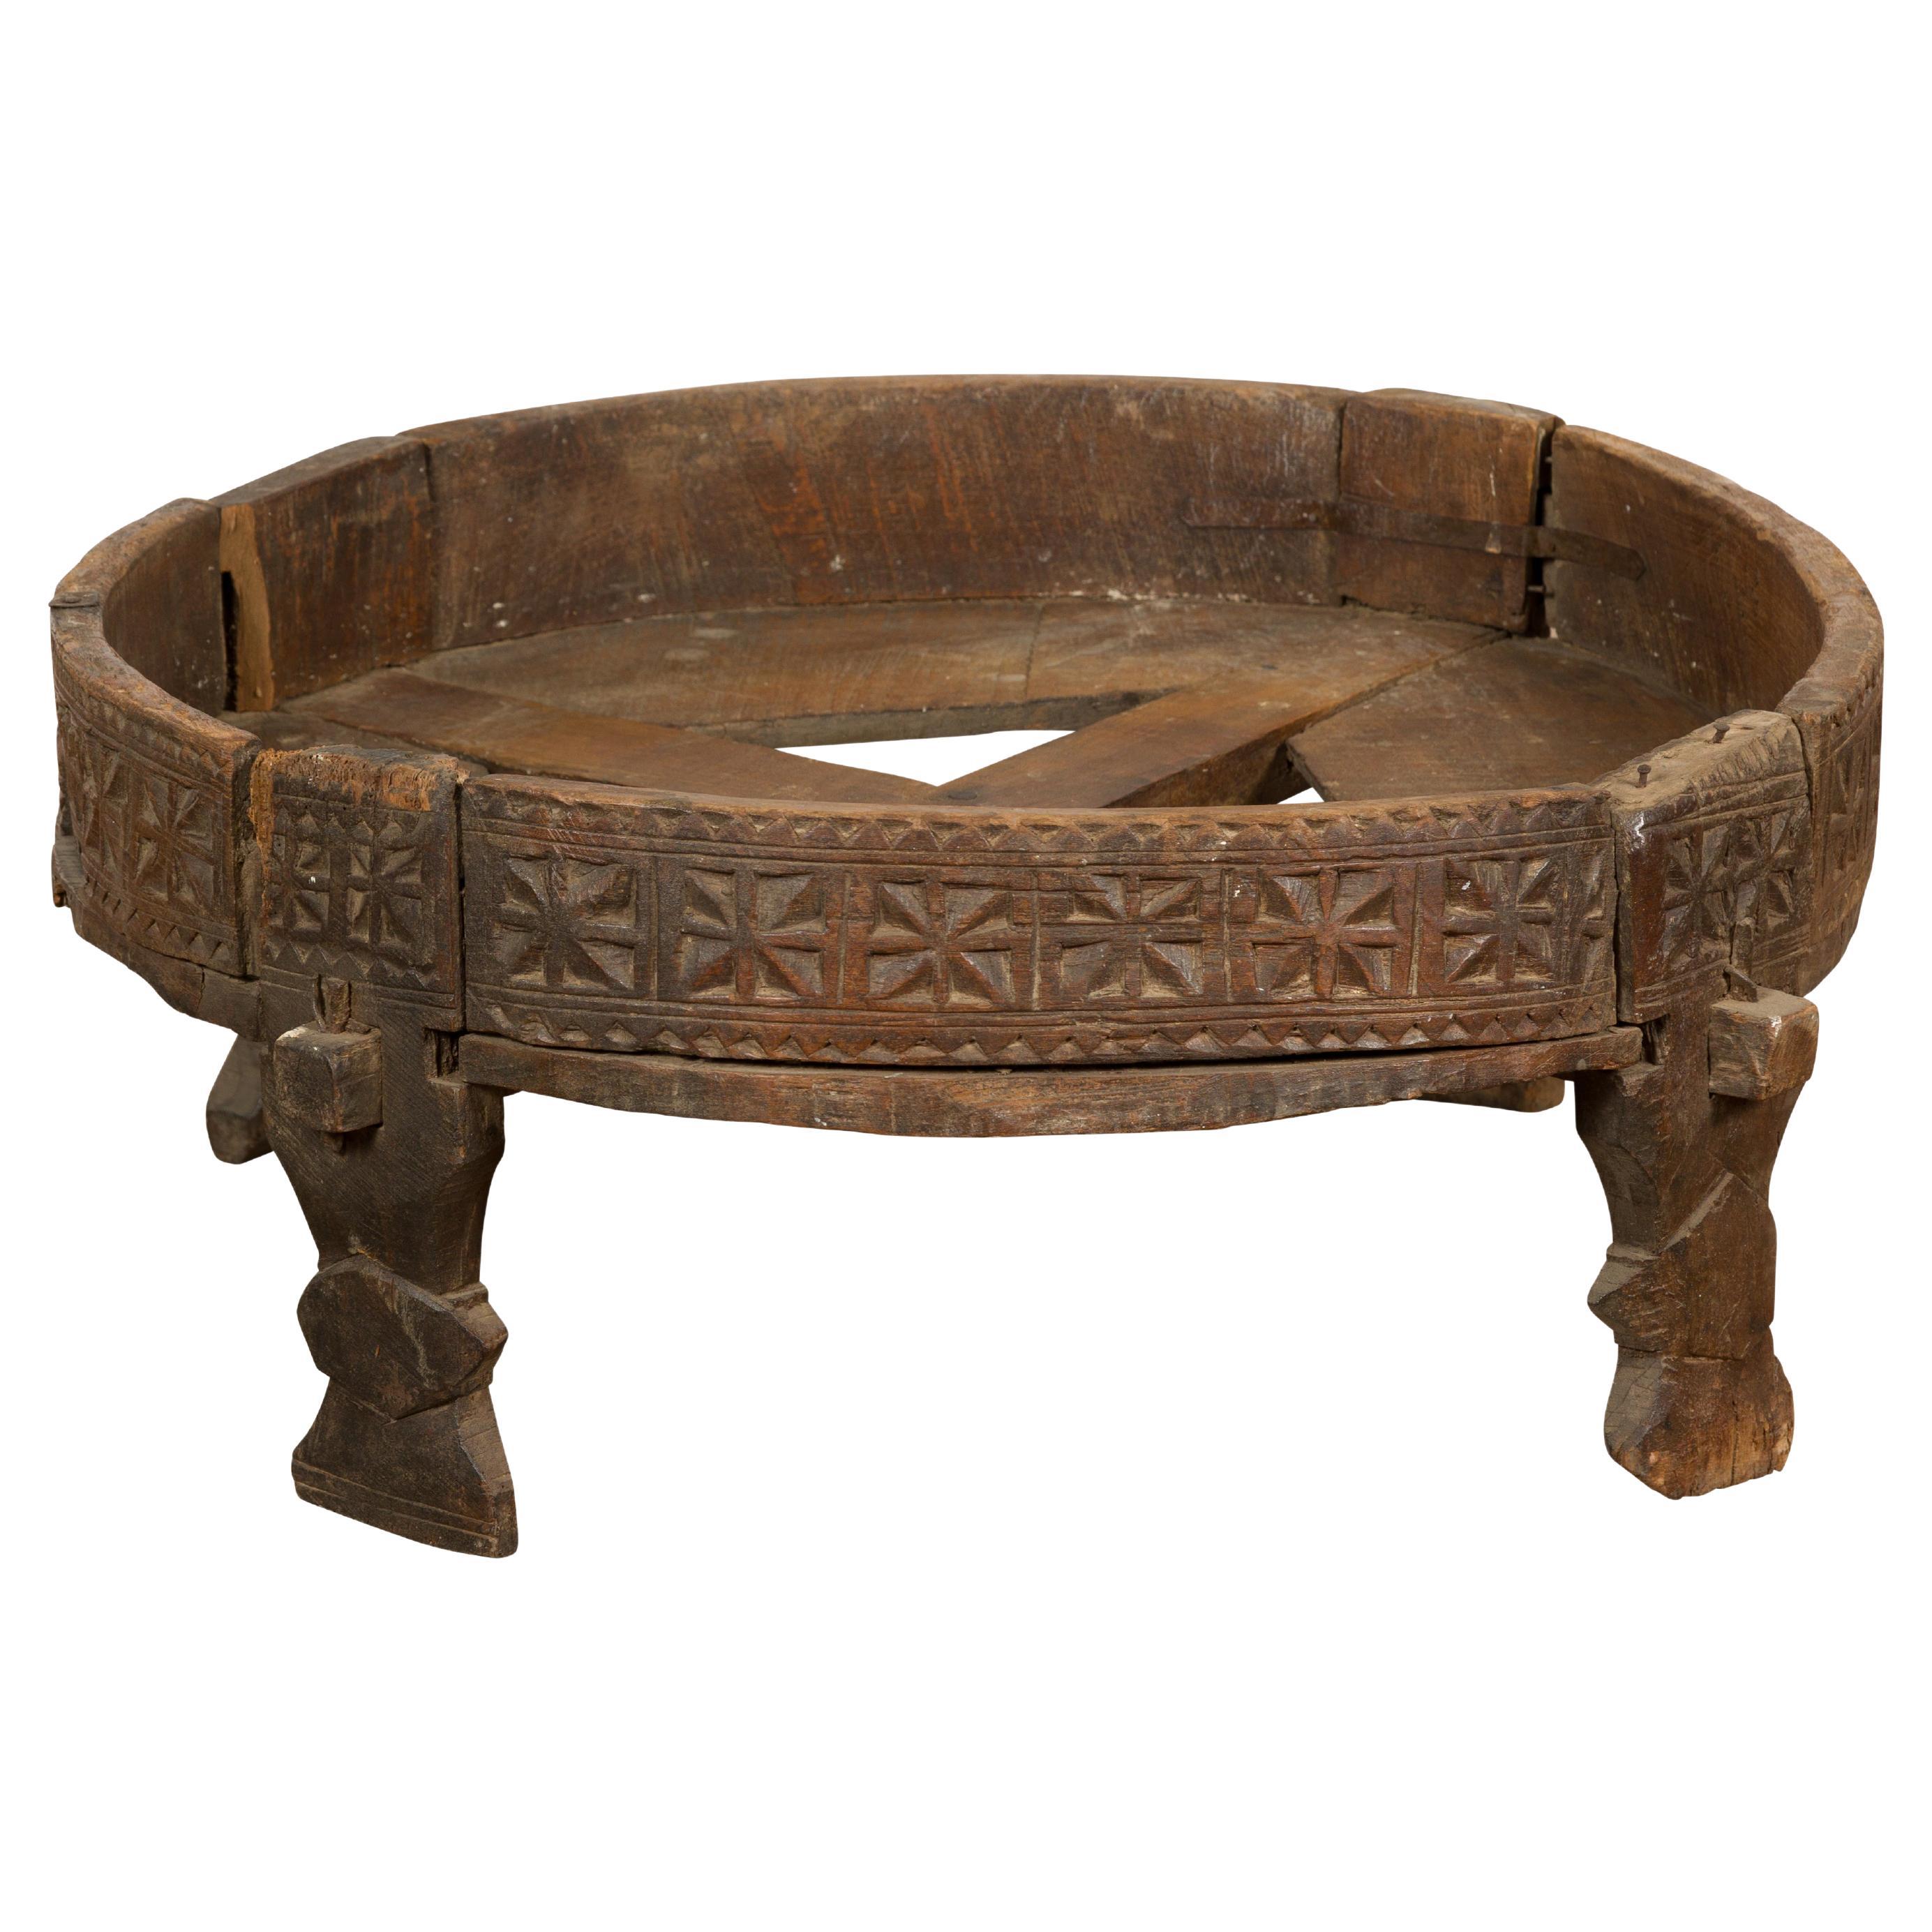 Ancienne table à meuler indienne Chakki avec décor géométrique sculpté à la main